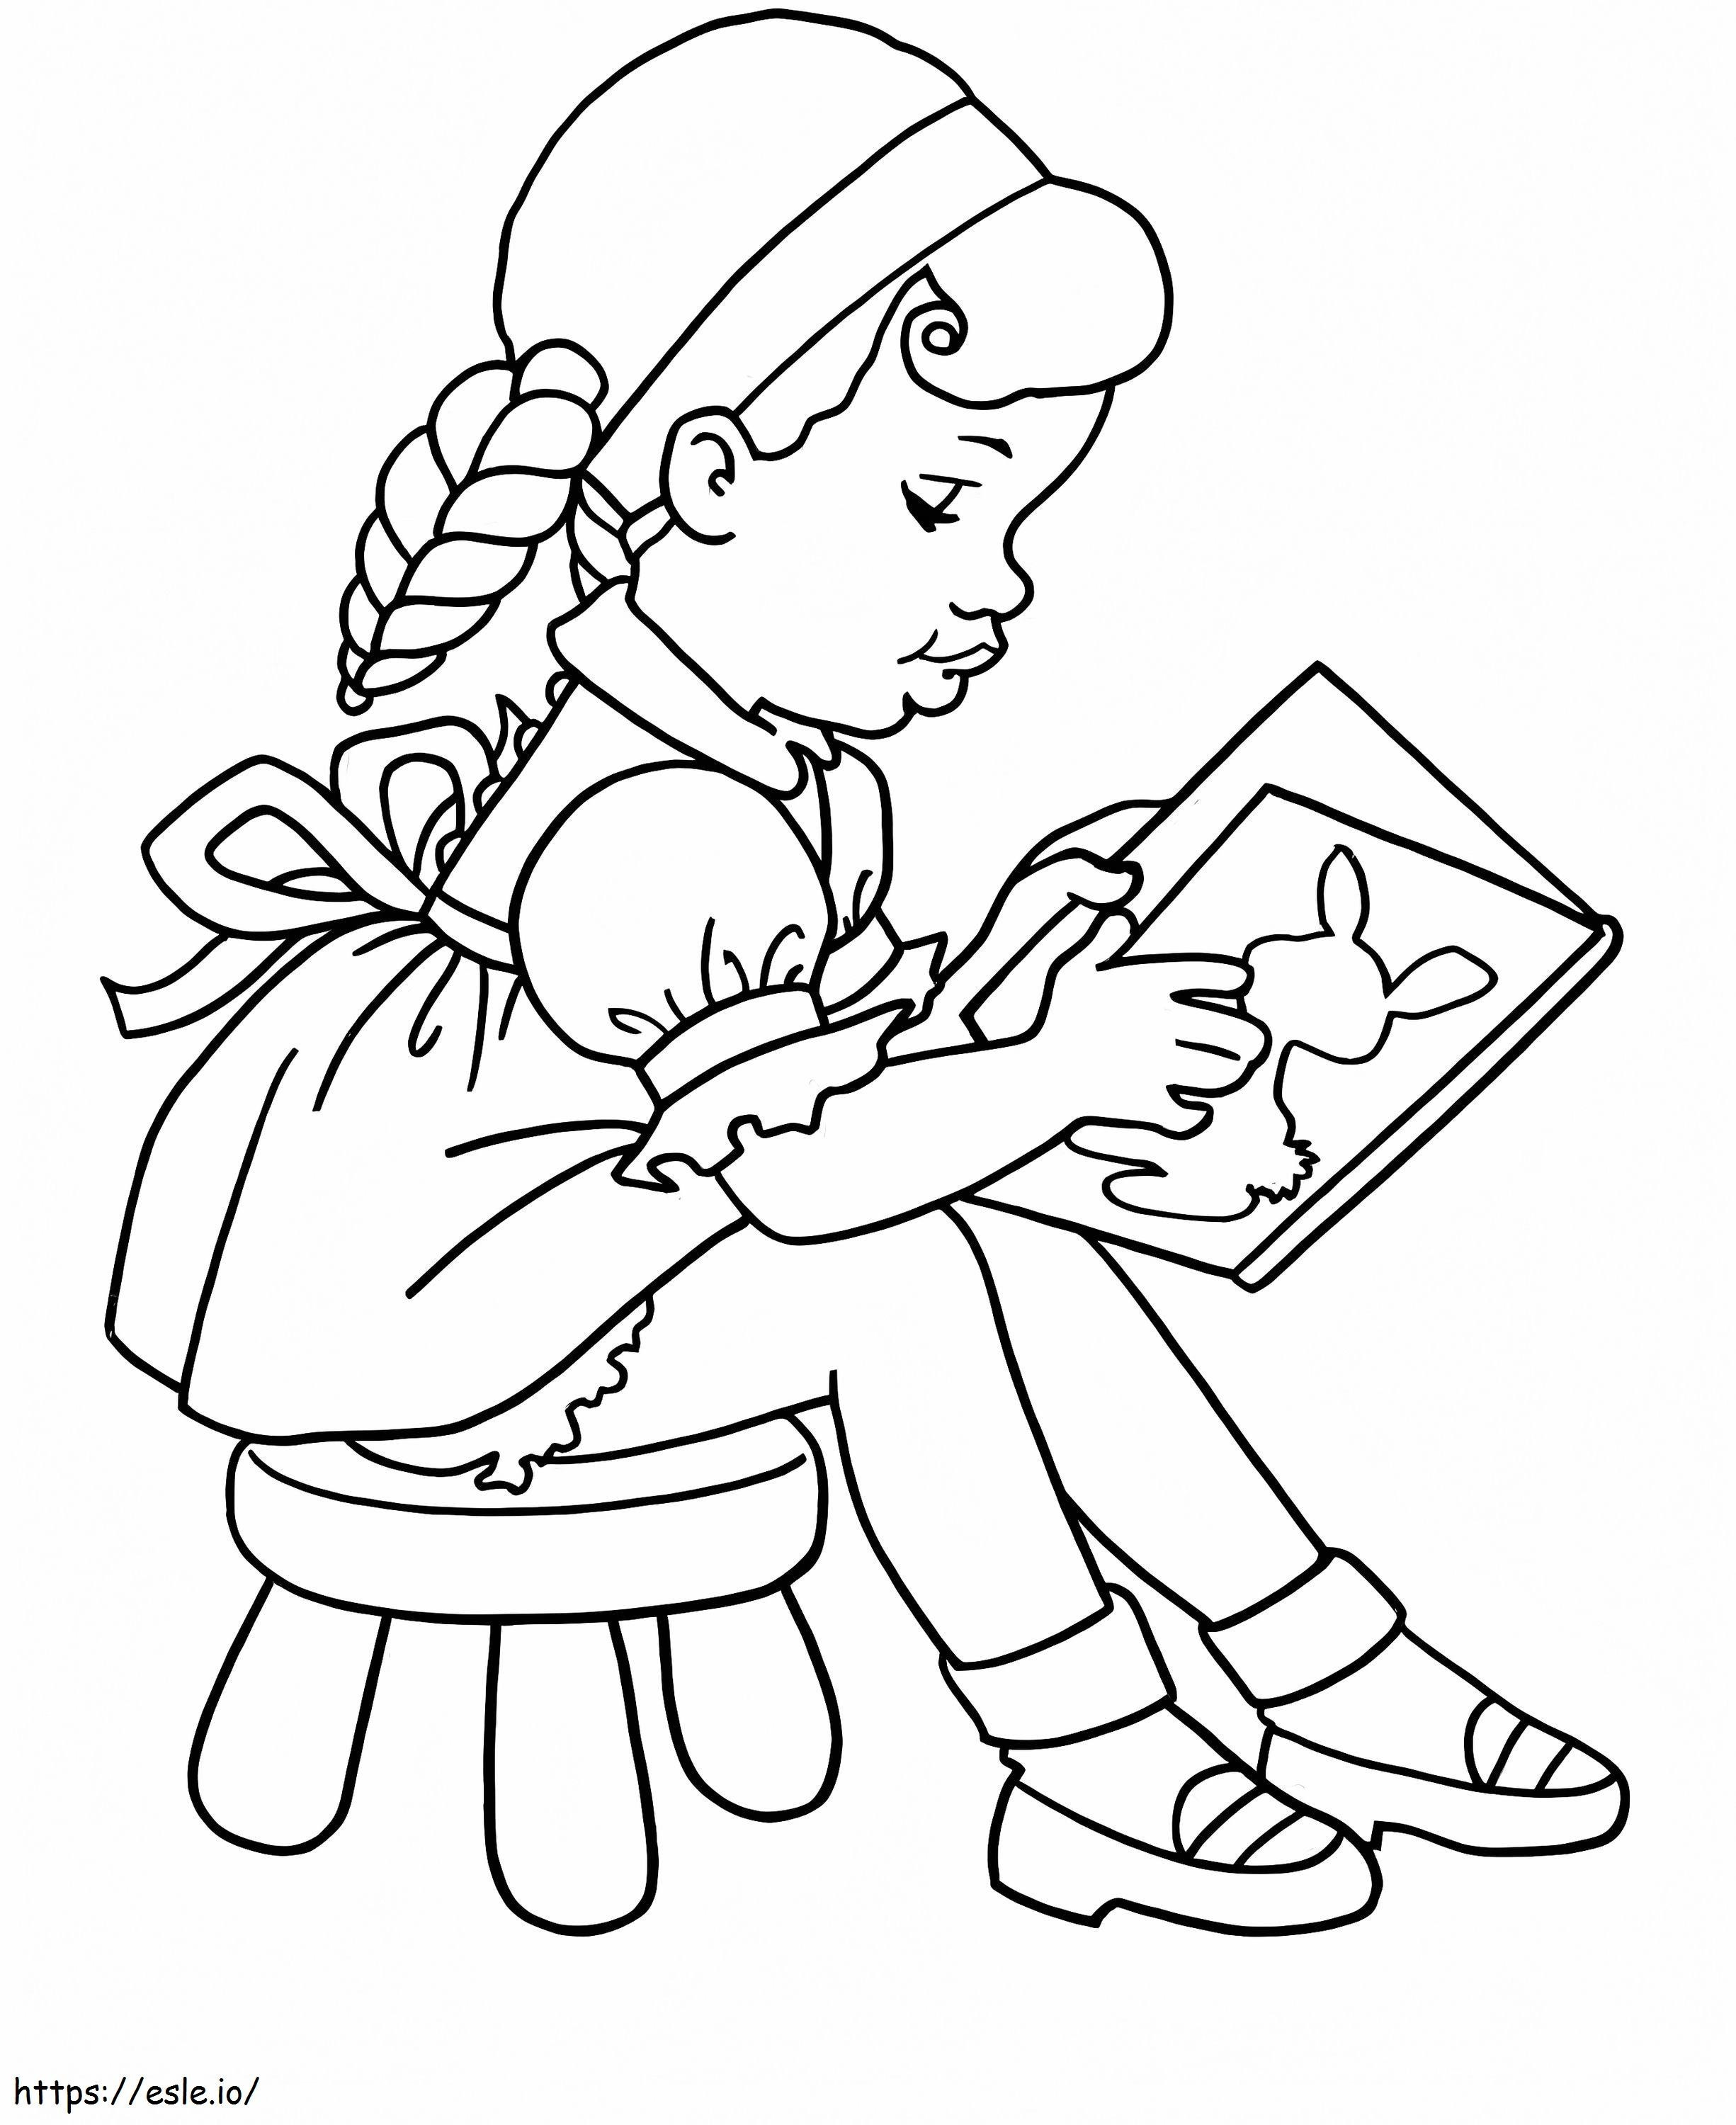 Nina leest een boek op school kleurplaat kleurplaat